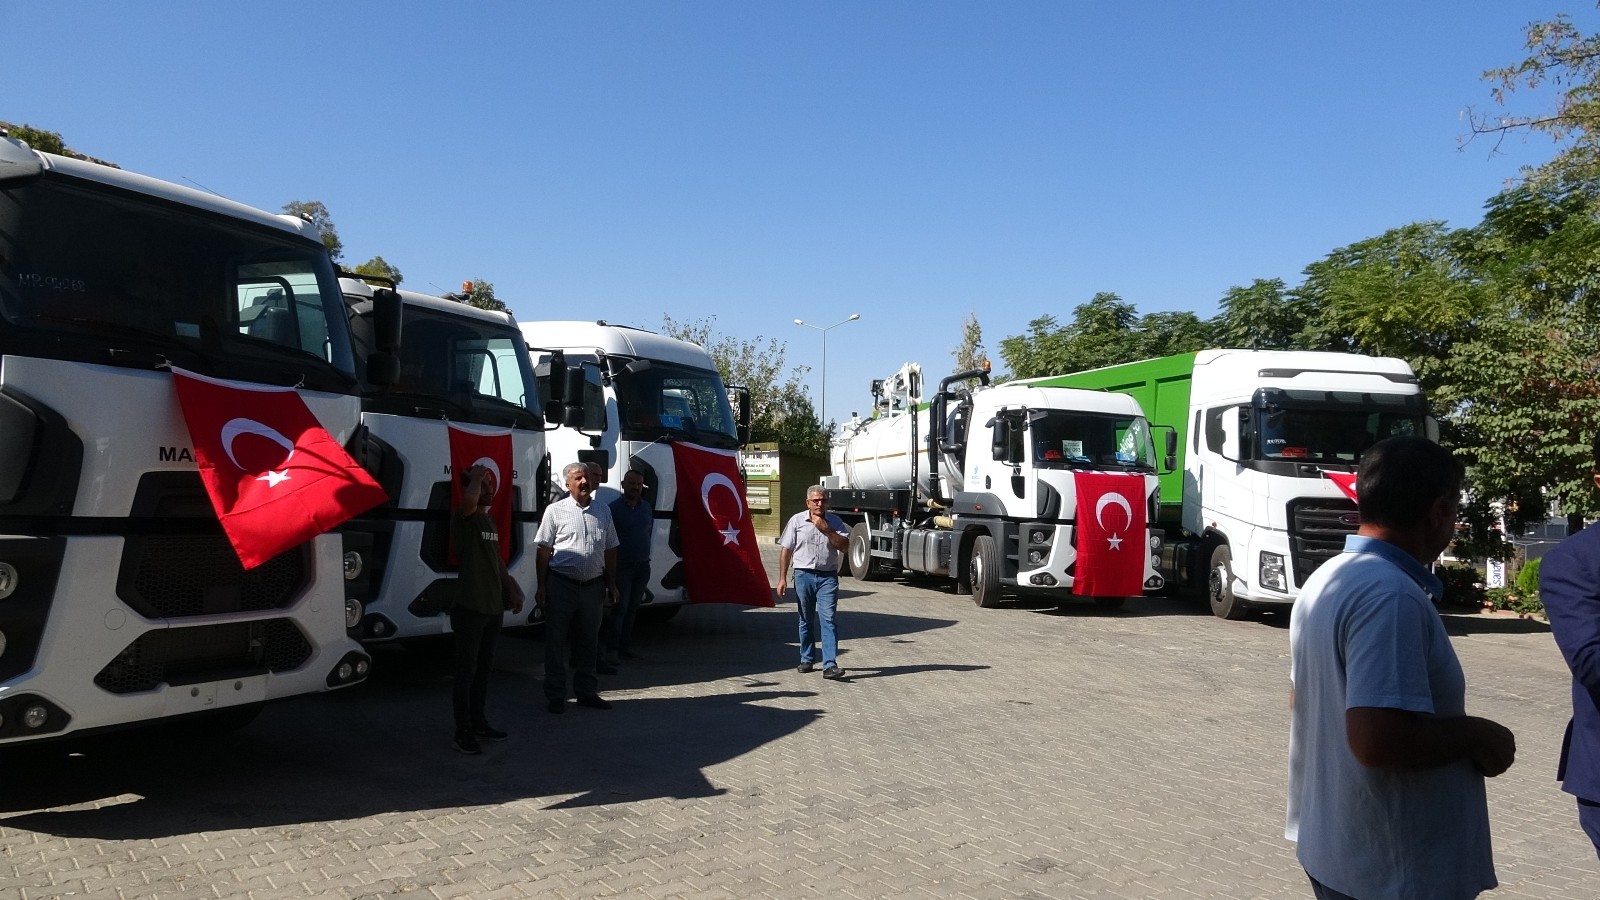 Mardin Büyükşehir Belediyesine hibe edilen araçlar törenle teslim alındı #mardin